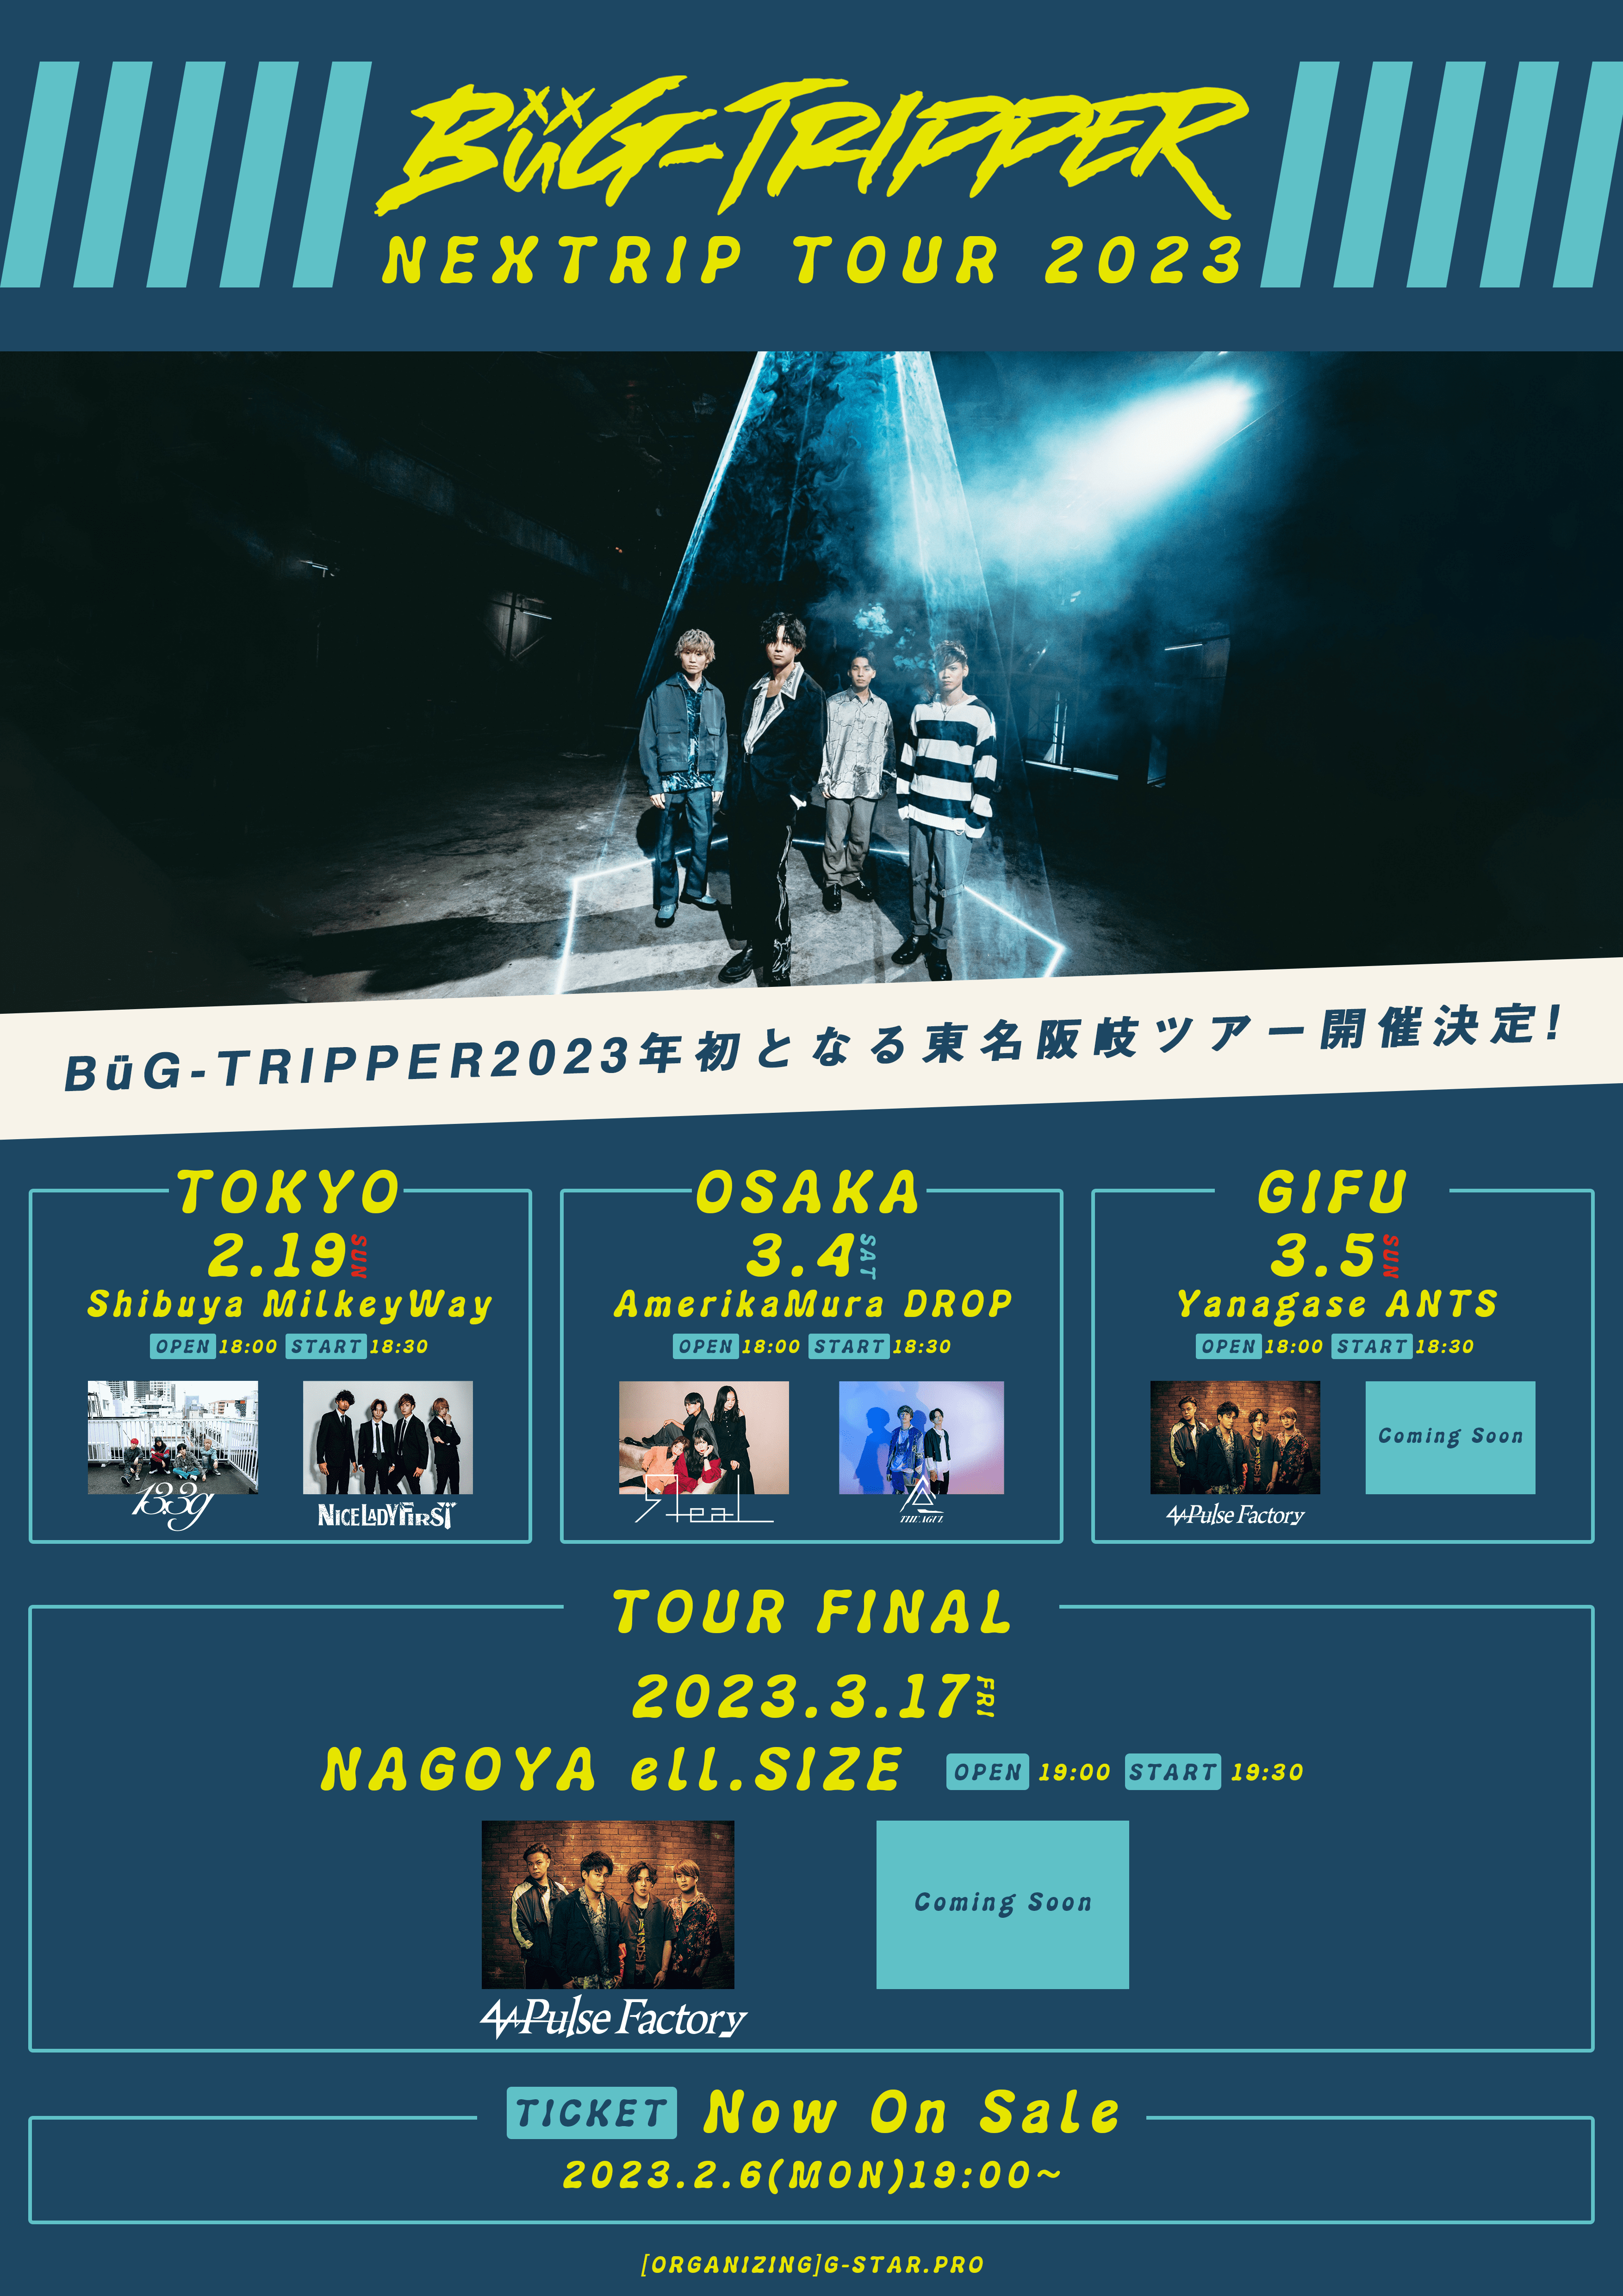 【一般発売】BüG-TRIPPER NEXTRIP TOUR 2023 [愛知公演]